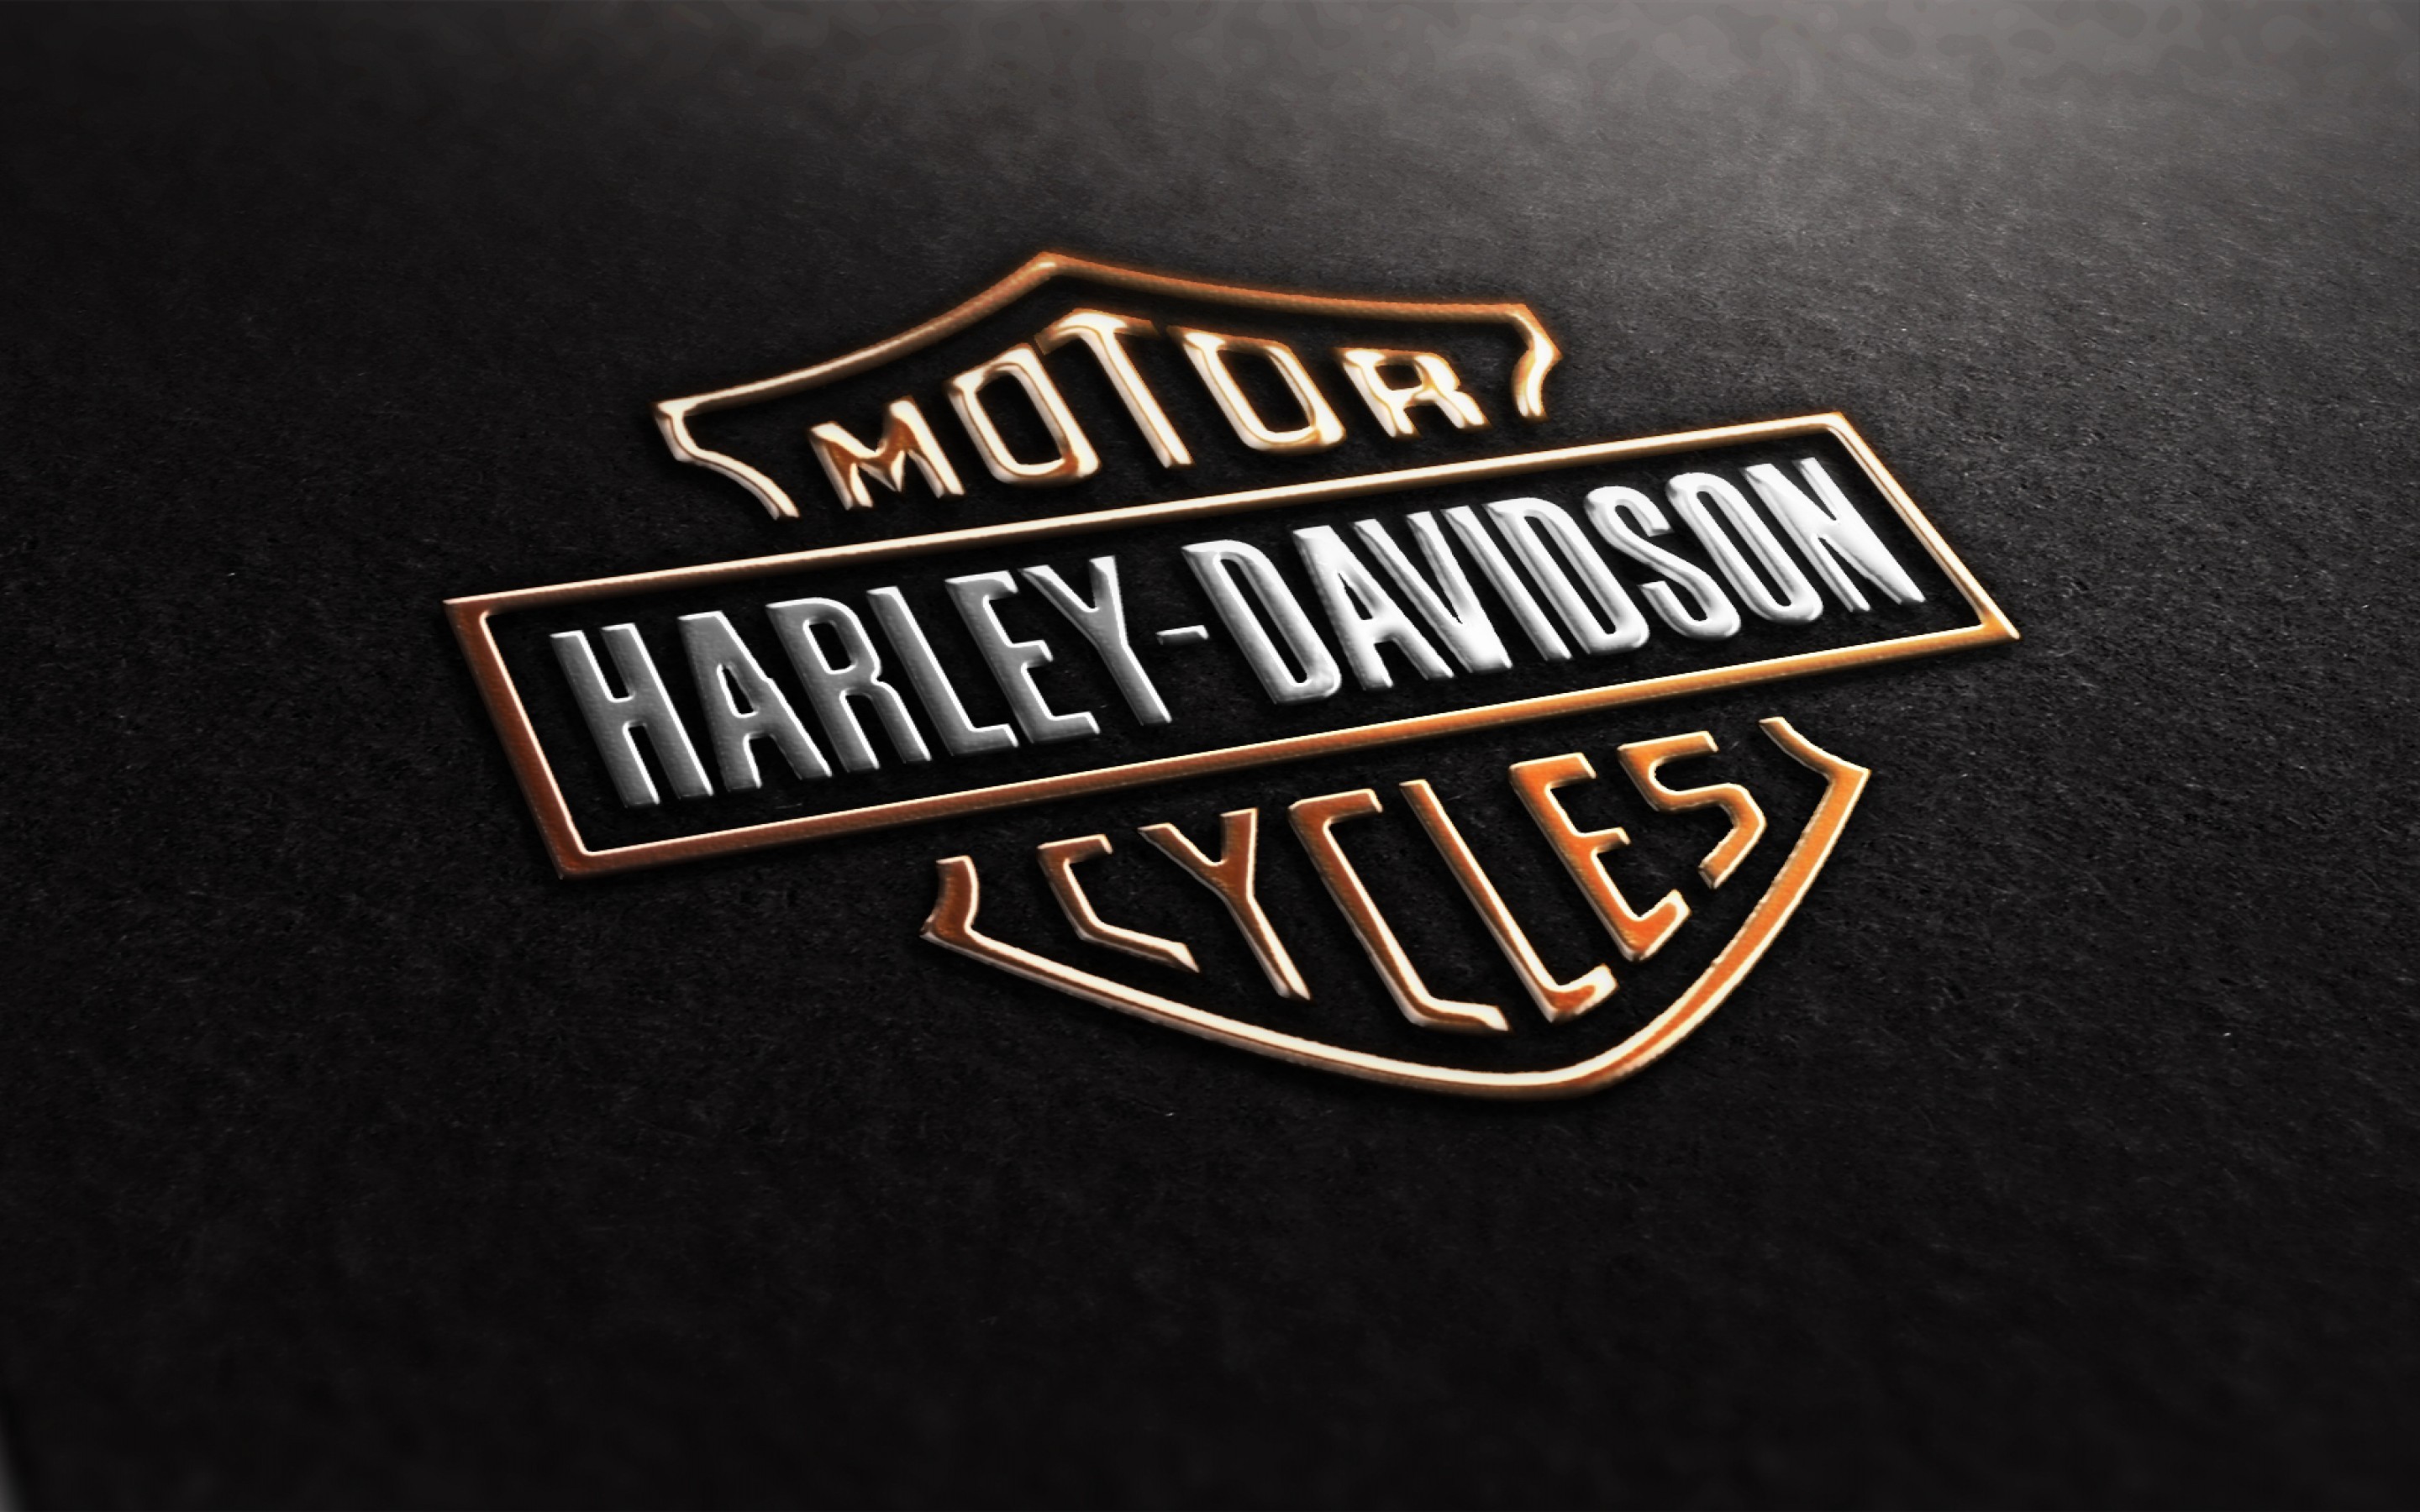 2880x1800 Fonds d'Ã©cran Harley Davidson : tous les wallpapers Harley Davidson